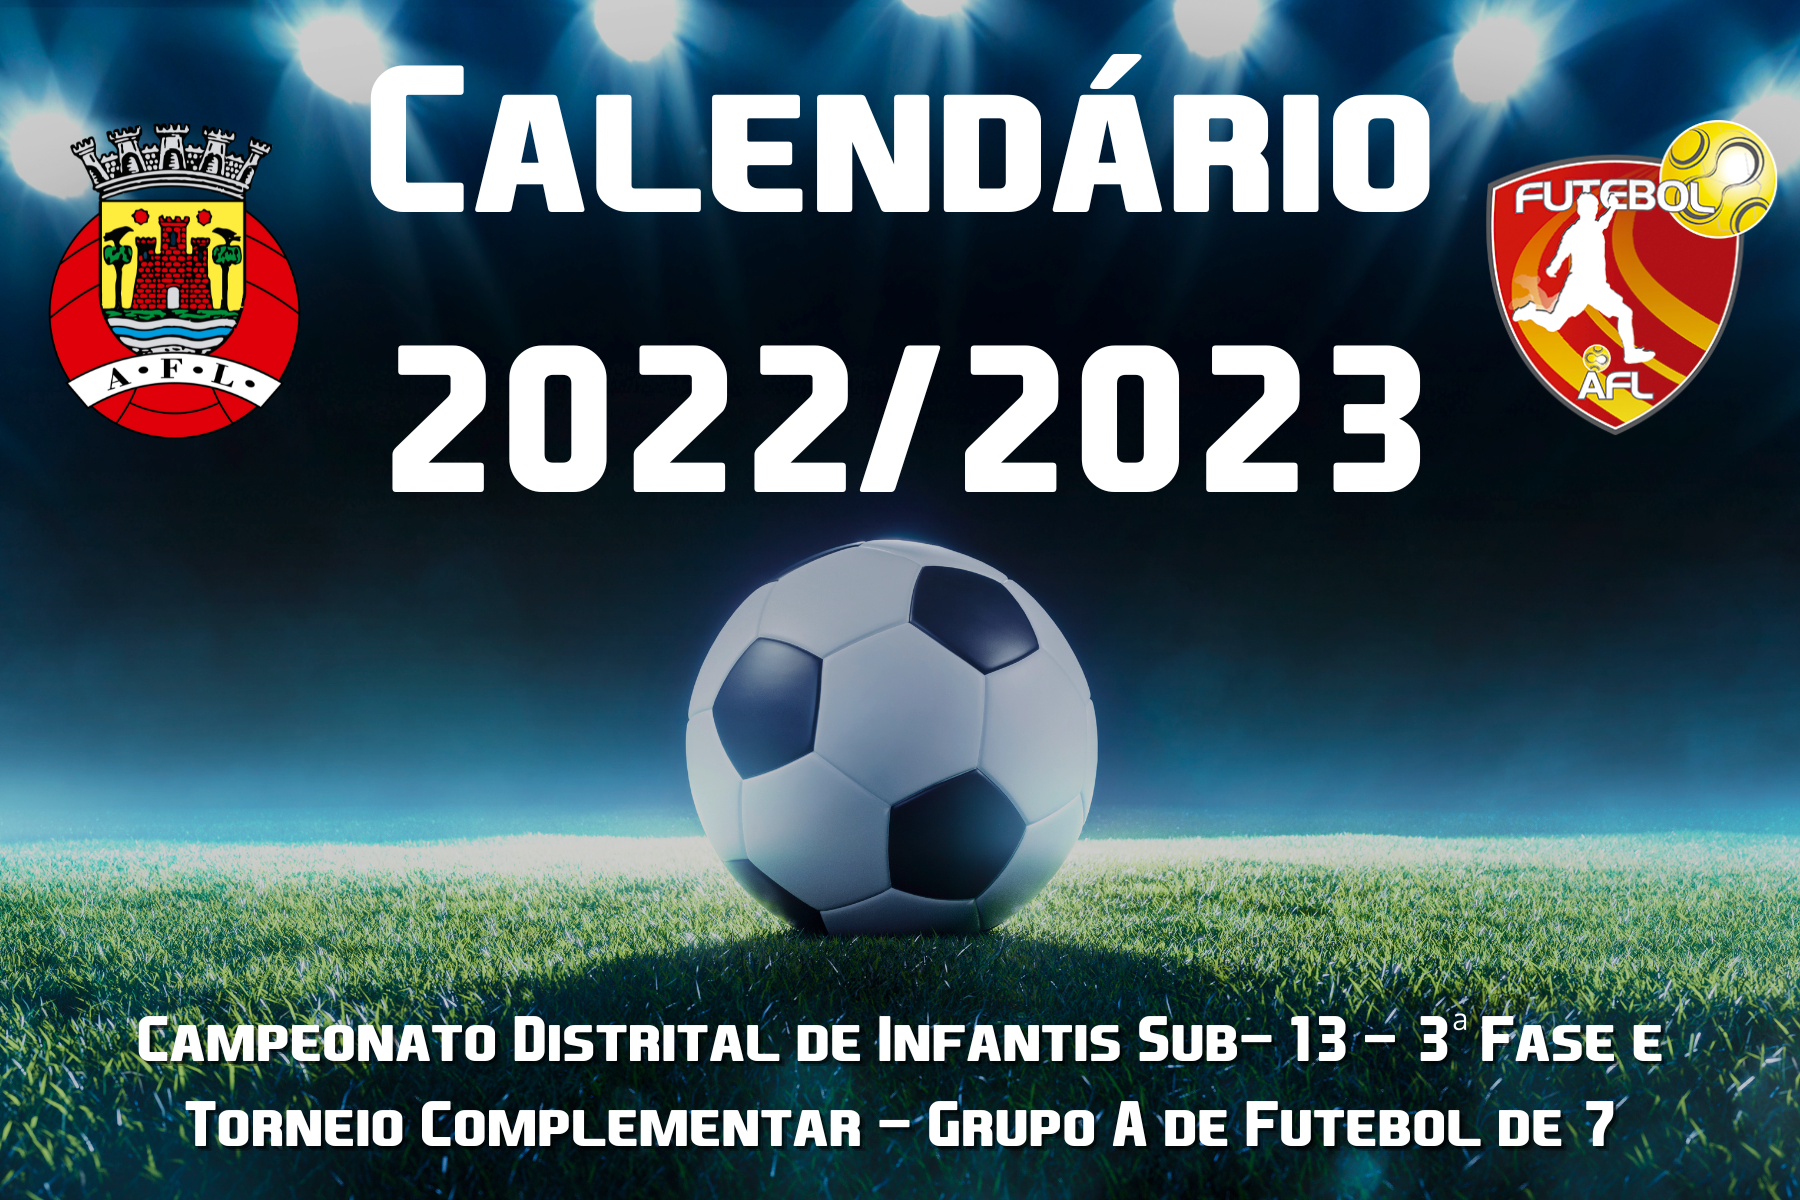 Calendário completo da I Liga 2022/2023